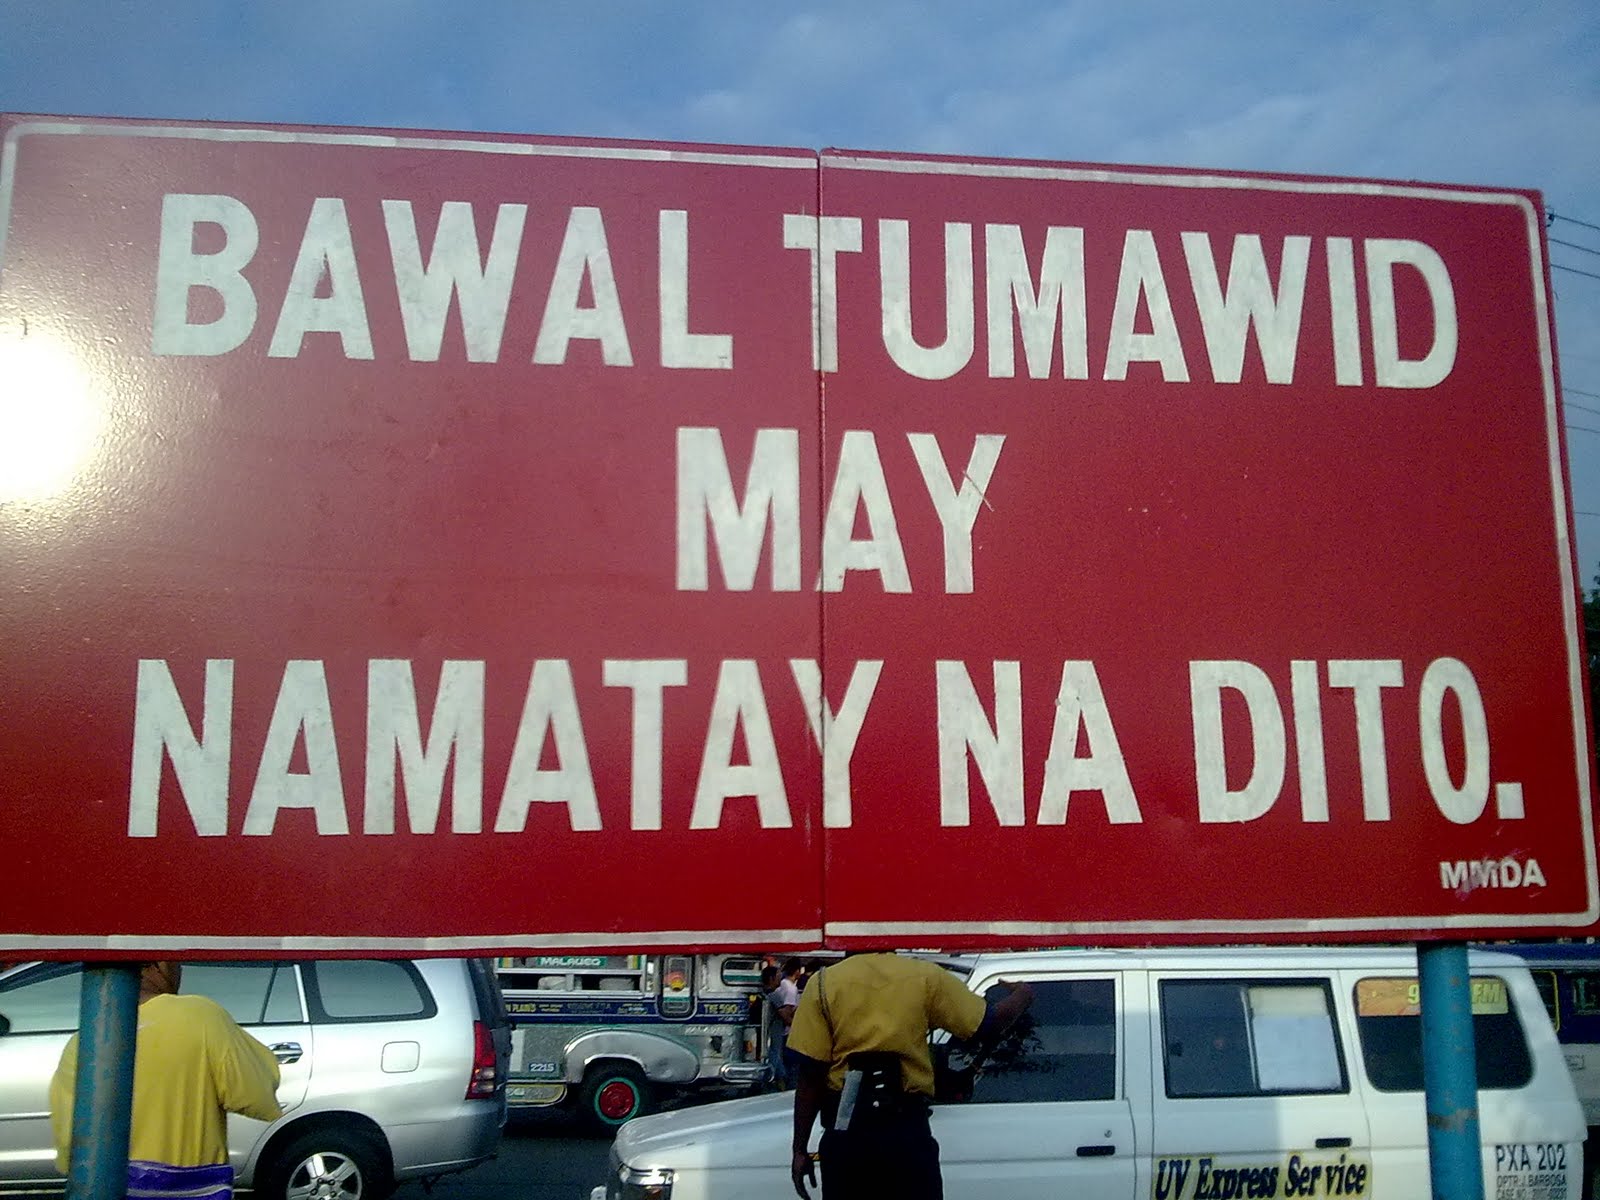 Bawal tumawid! May namatay na dito! - Untitled